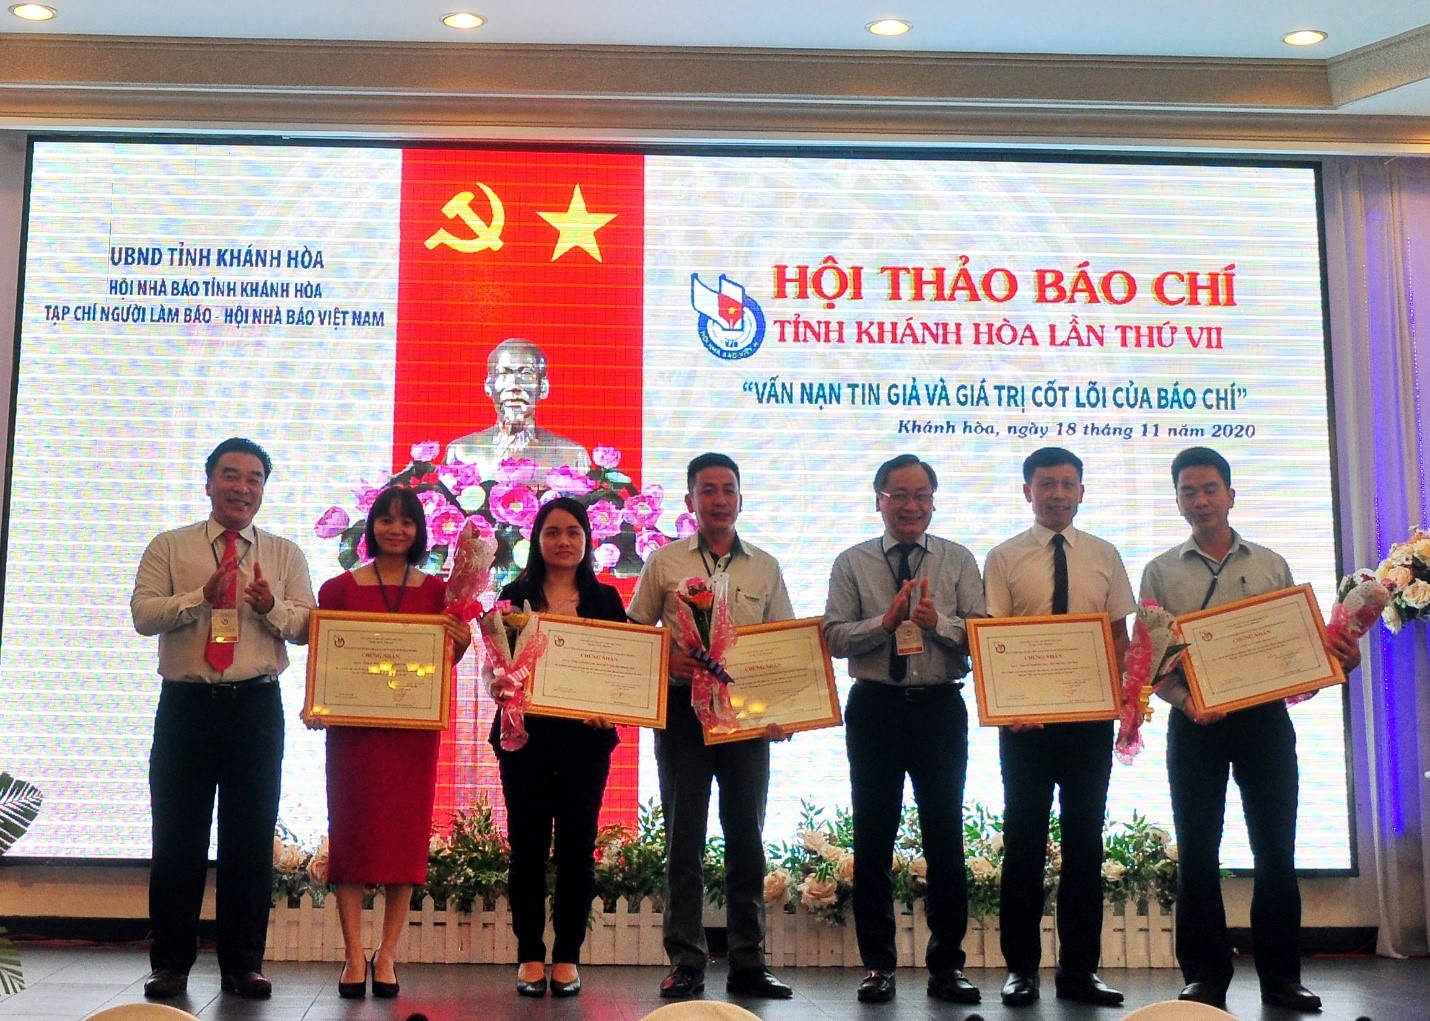 BTC Hội Thảo Báo chí trao chứng nhận cho các Doanh nghiệp đã đồng hành cùng Hội Thảo. 